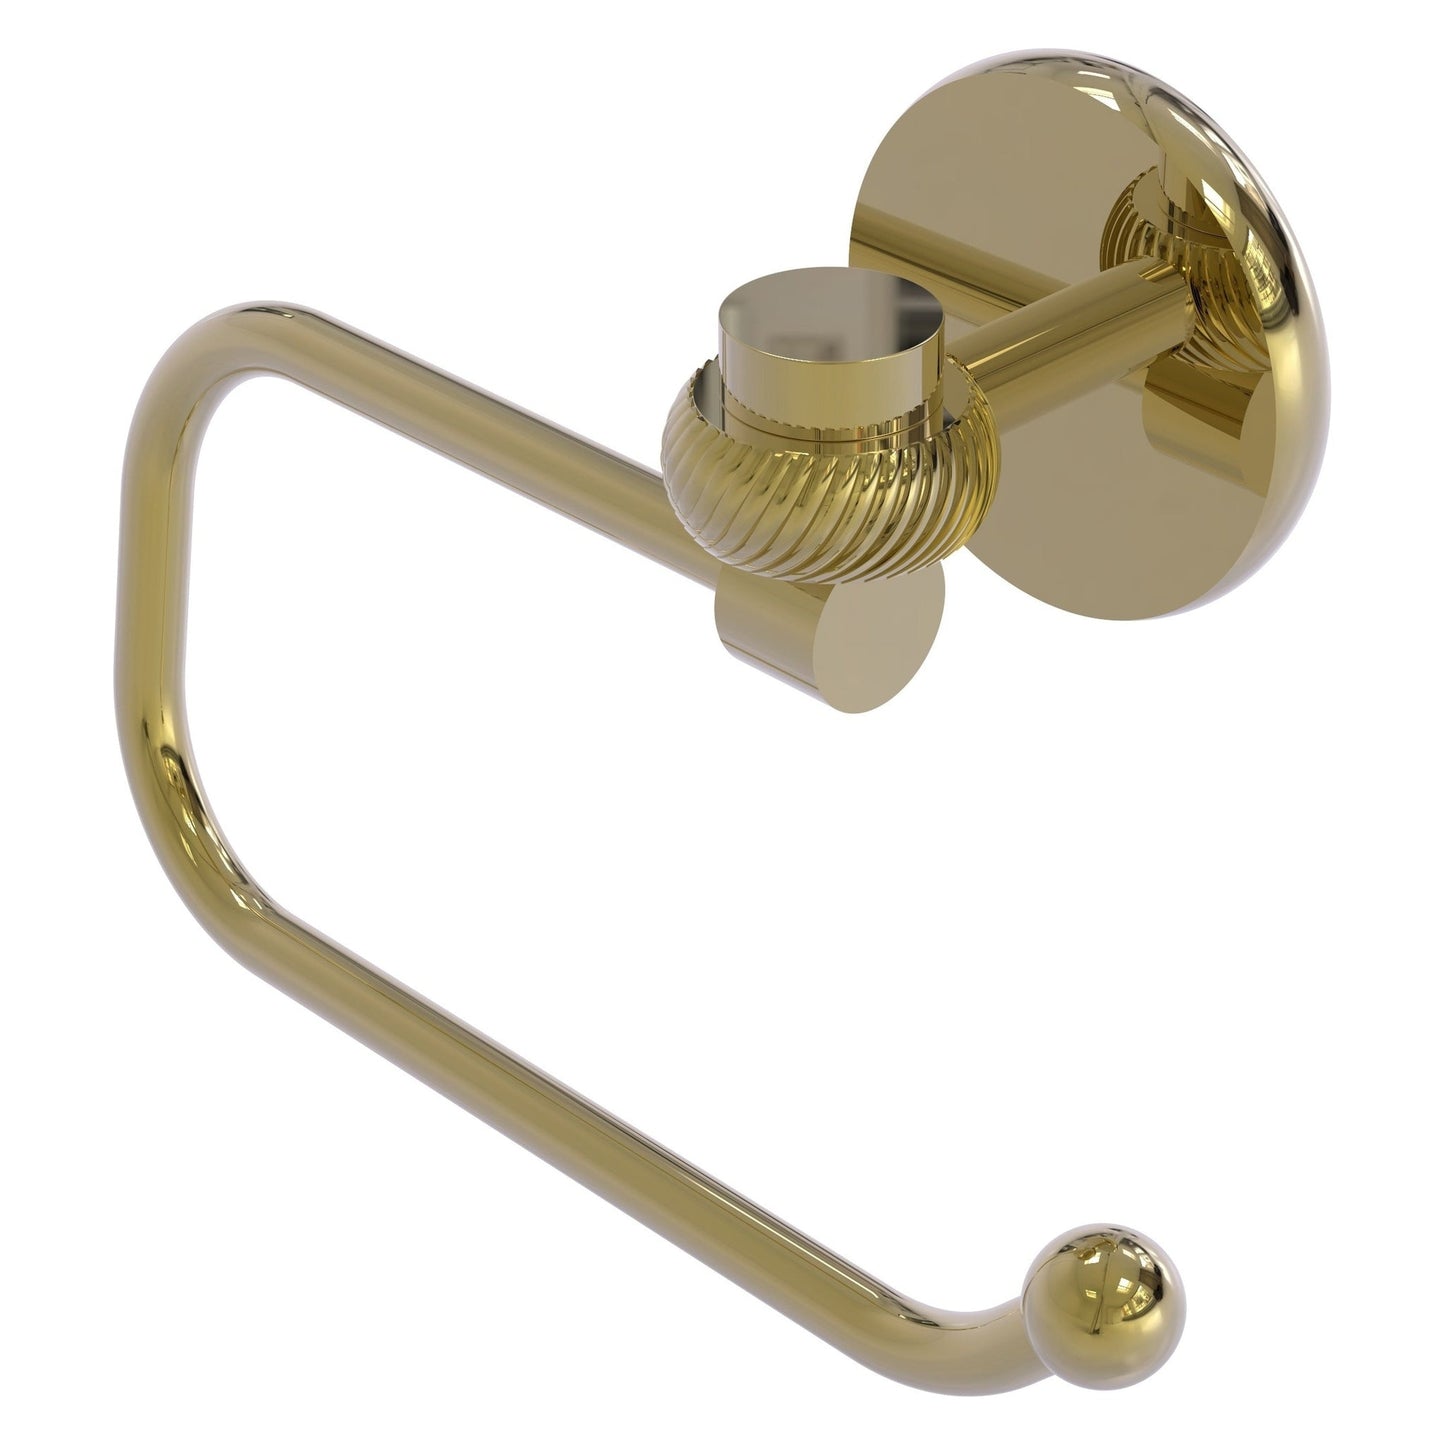 Allied Brass Satellite Orbit One 7 x 2.6 Unlacquered Brass Solid Bra – US  Bath Store